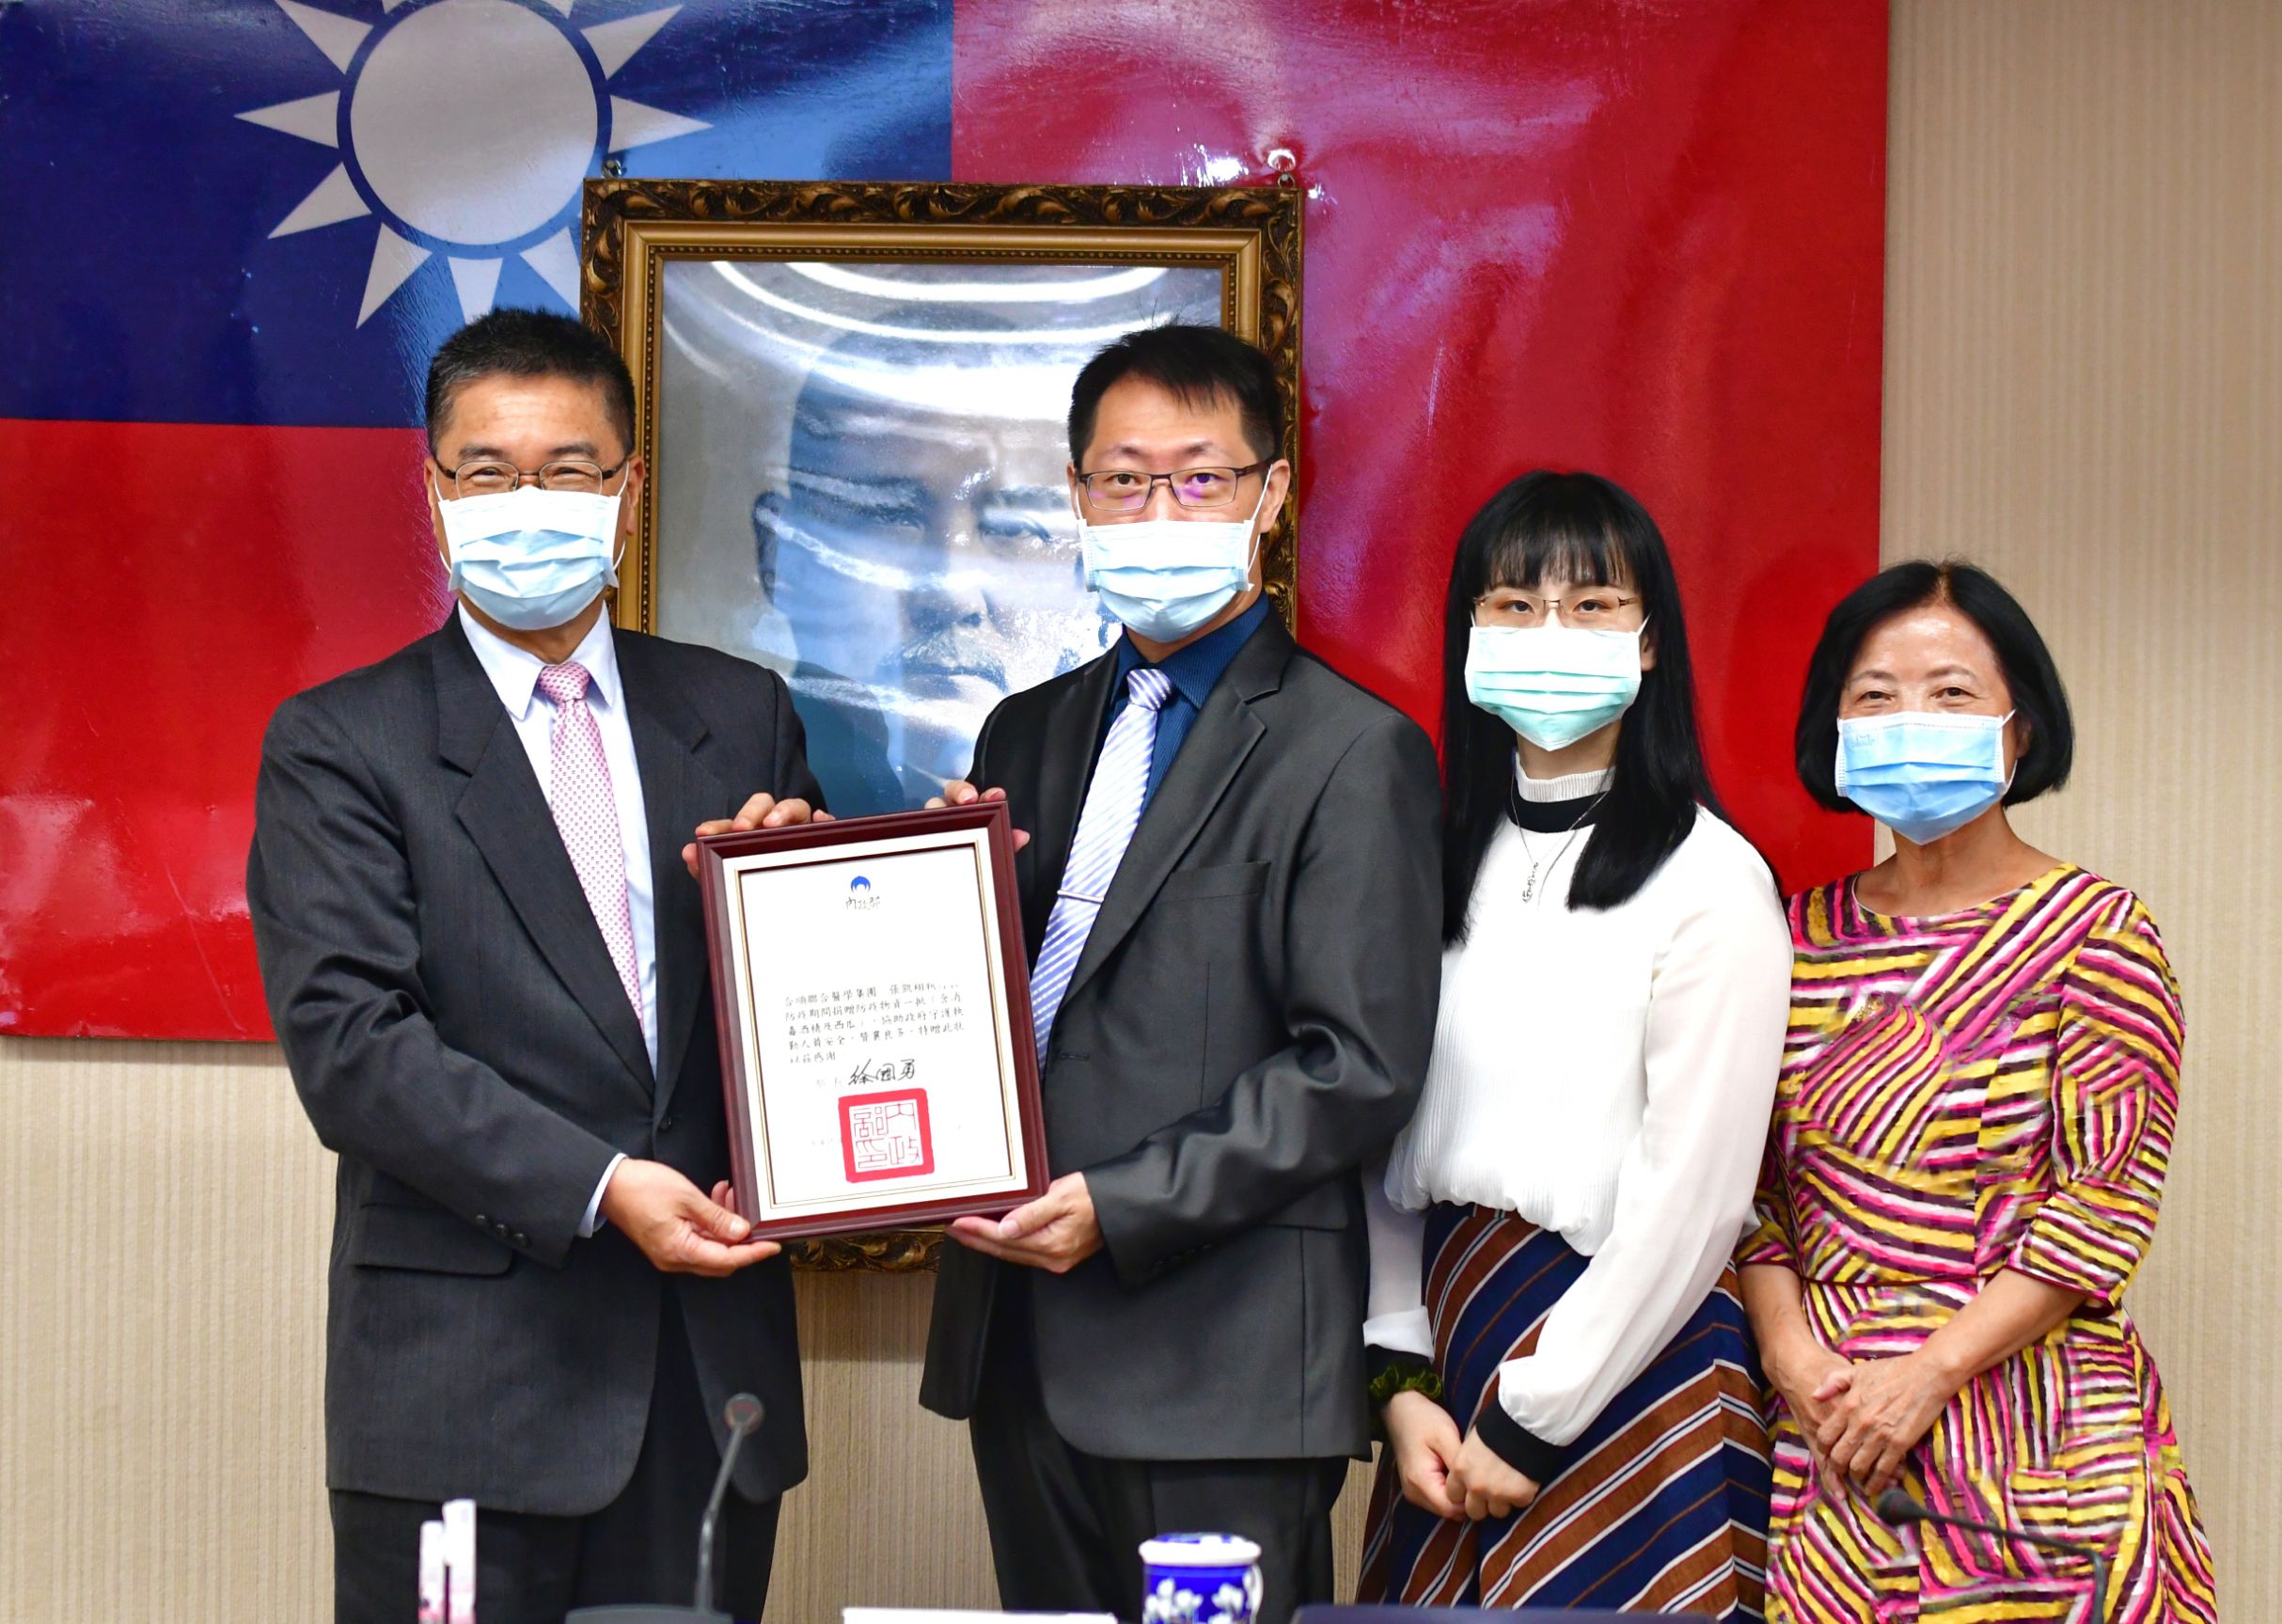 部長徐國勇(左1)致贈感謝狀予HS合順聯合醫學集團執行長張凱翔(左2)及家人